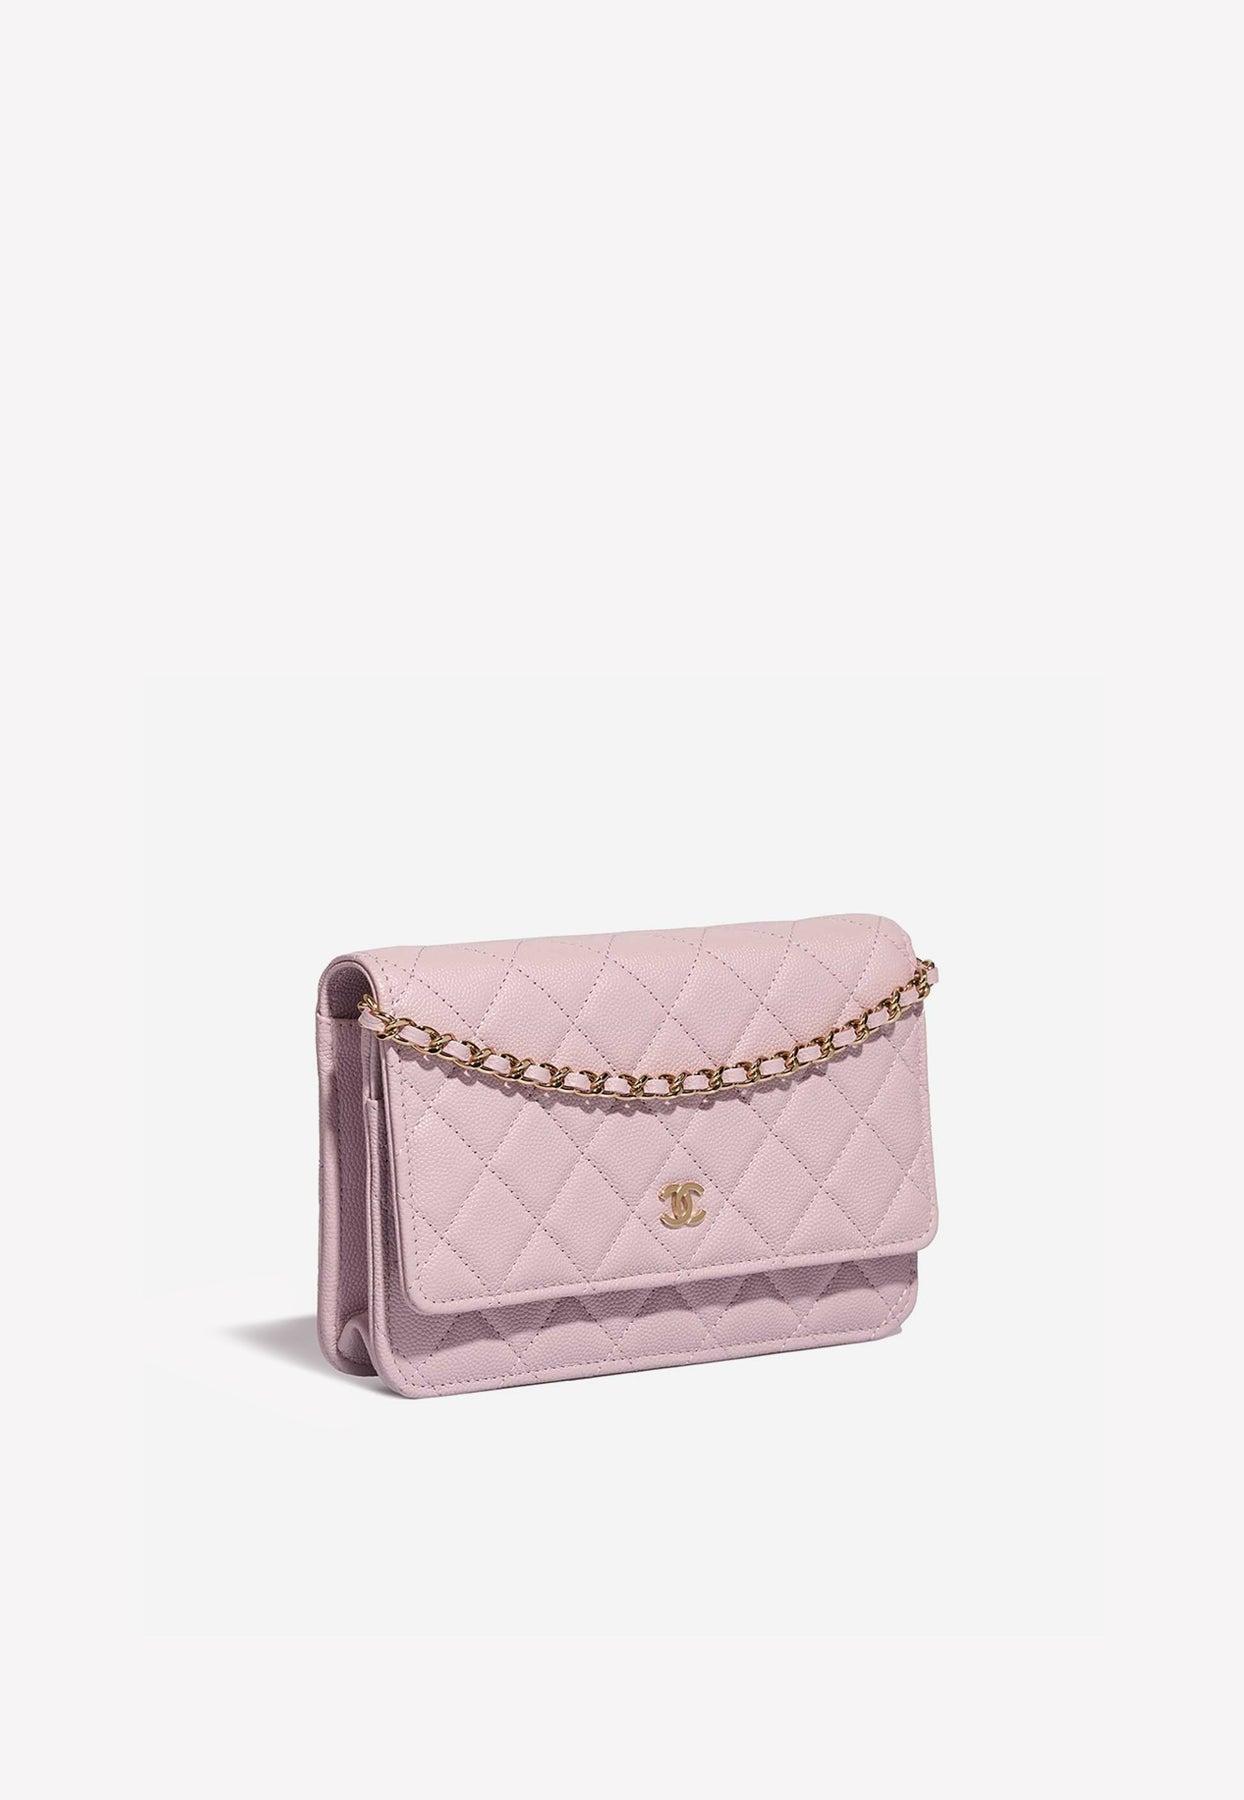 chanel wallet pink women